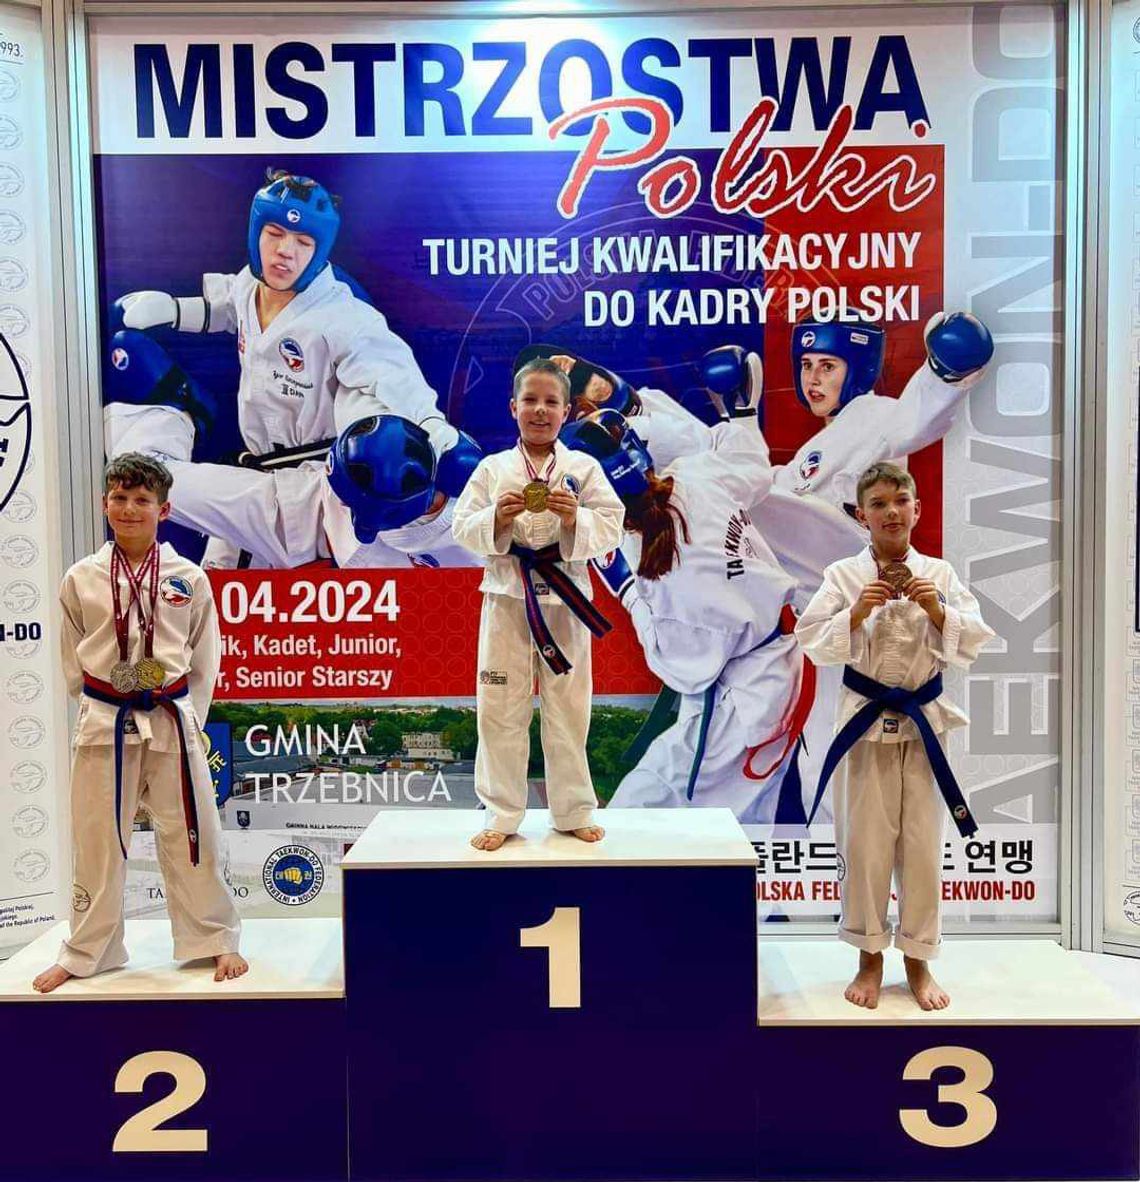 Mistrzostwa Polski Taekwon – do. Kalisz wywalczył 4 medale!